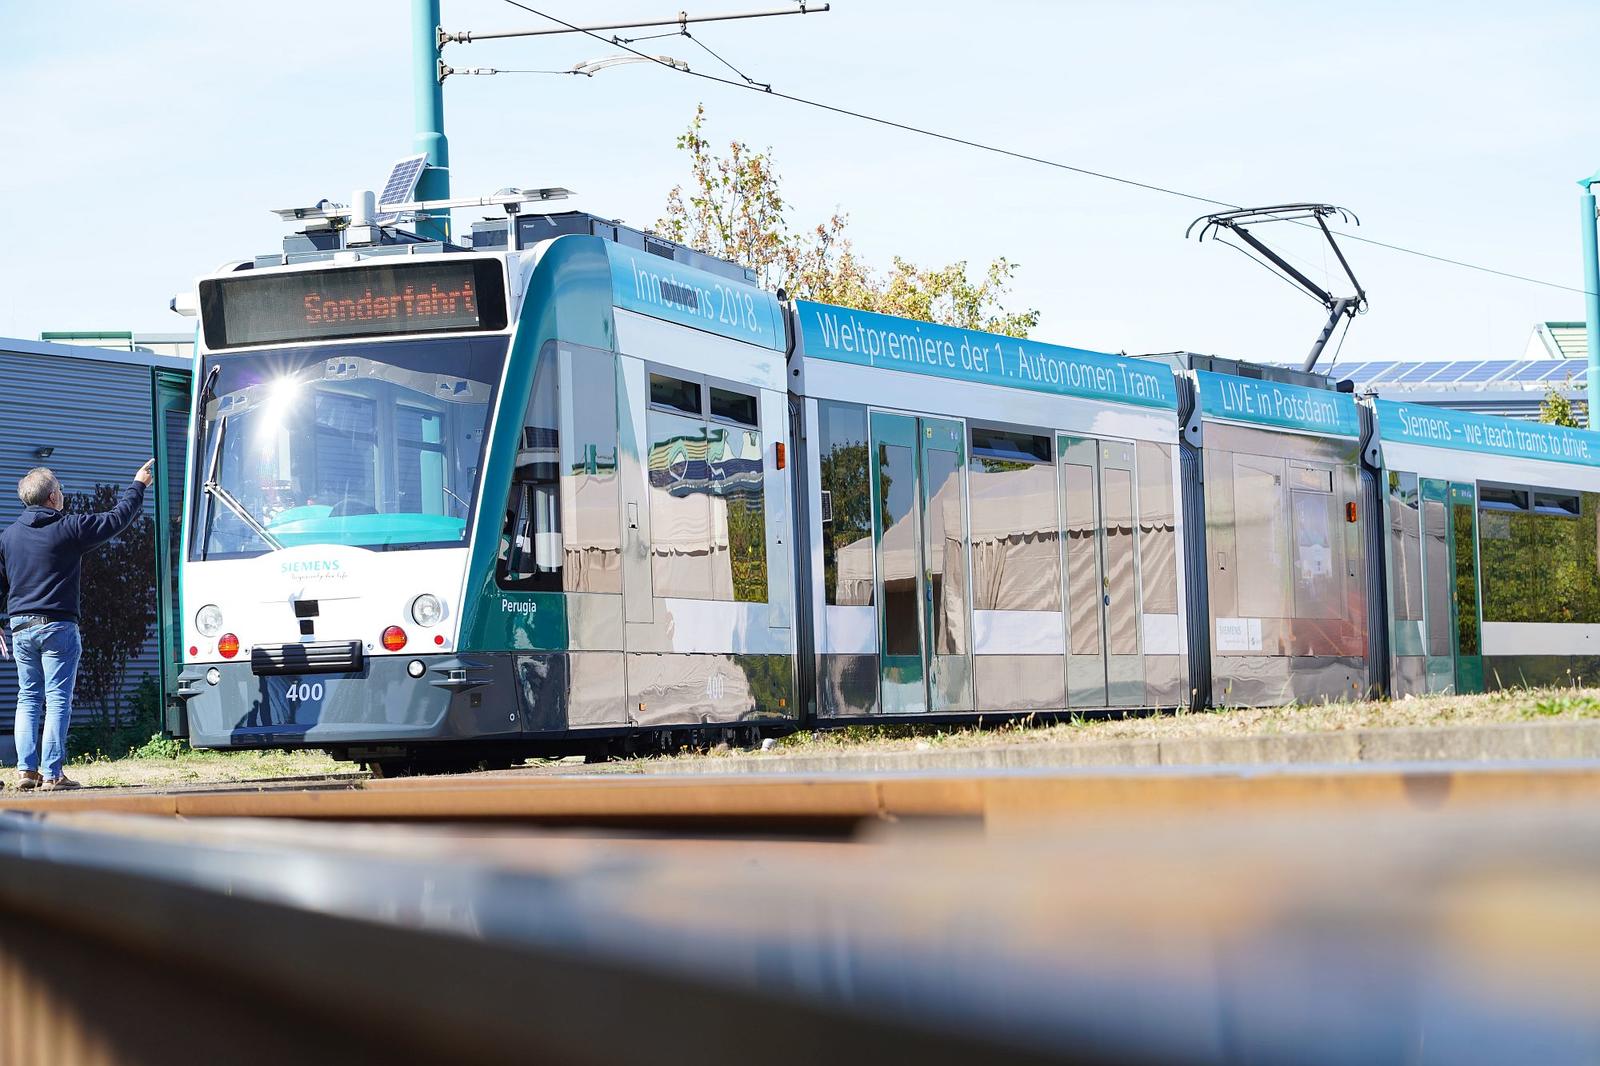 Siemens Mobility präsentiert erste autonom fahrende Straßenbahn der Welt / Siemens presents world’s first autonomous tram